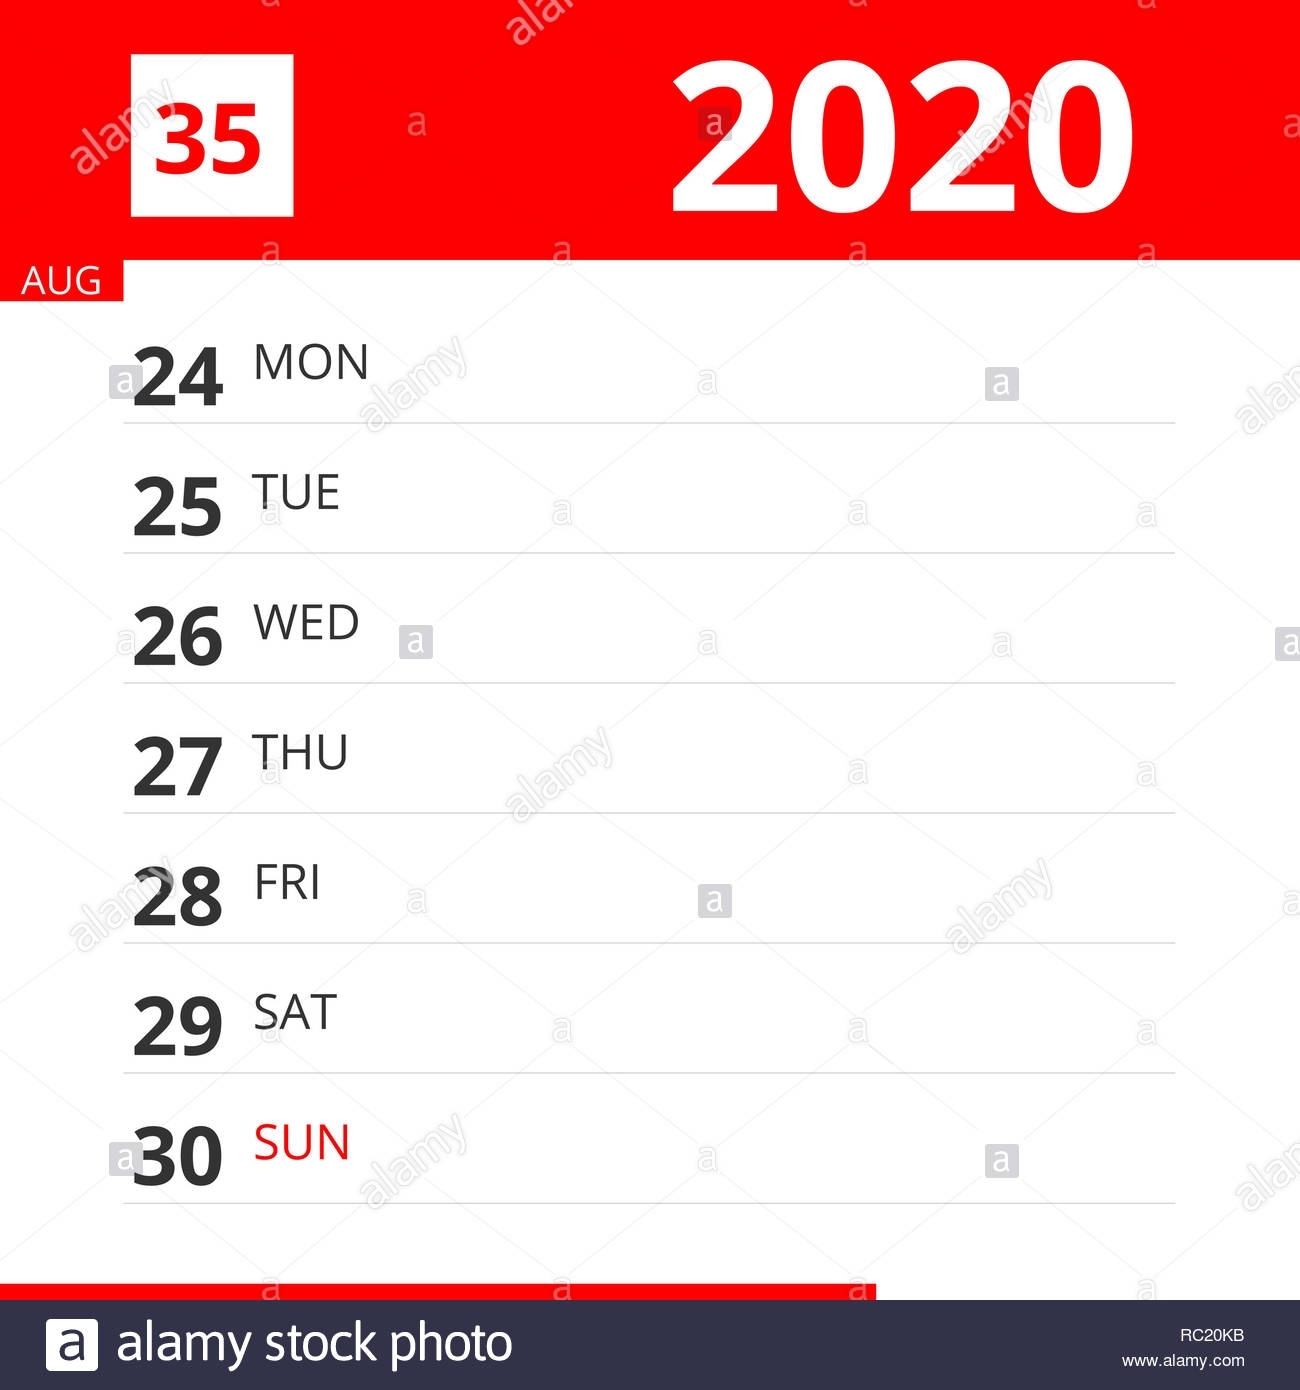 Calendar Planner For Week 35 In 2020, Ends August 30, 2020